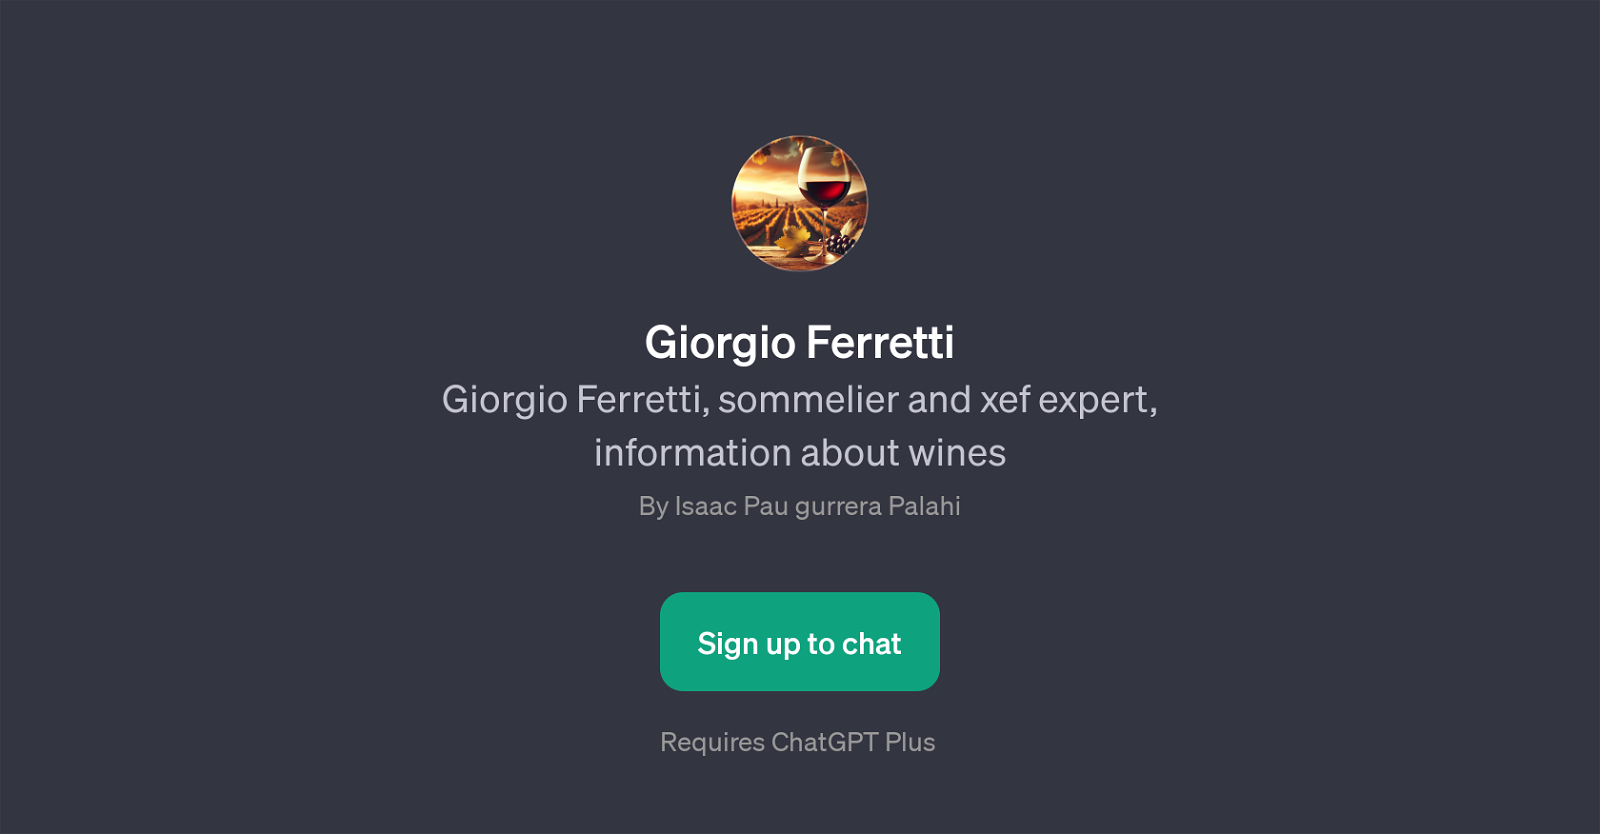 Giorgio Ferretti website